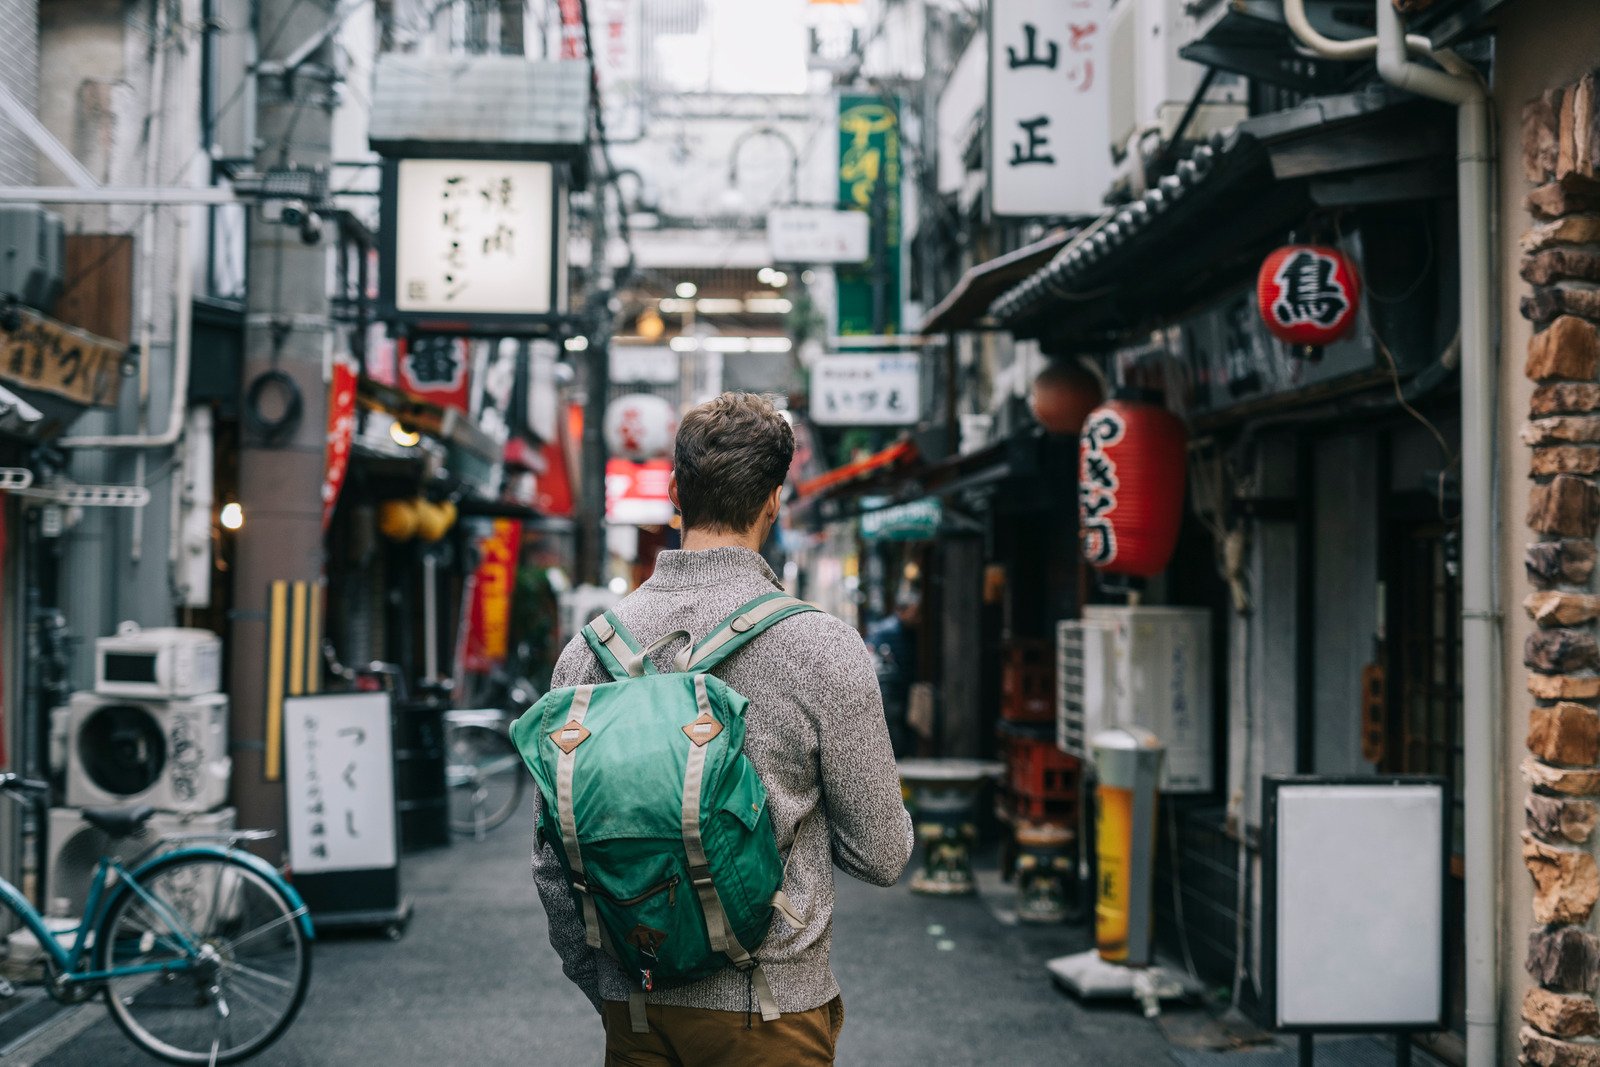  Du lịch tự túc giúp bạn khám phá Nhật Bản theo đúng sở thích